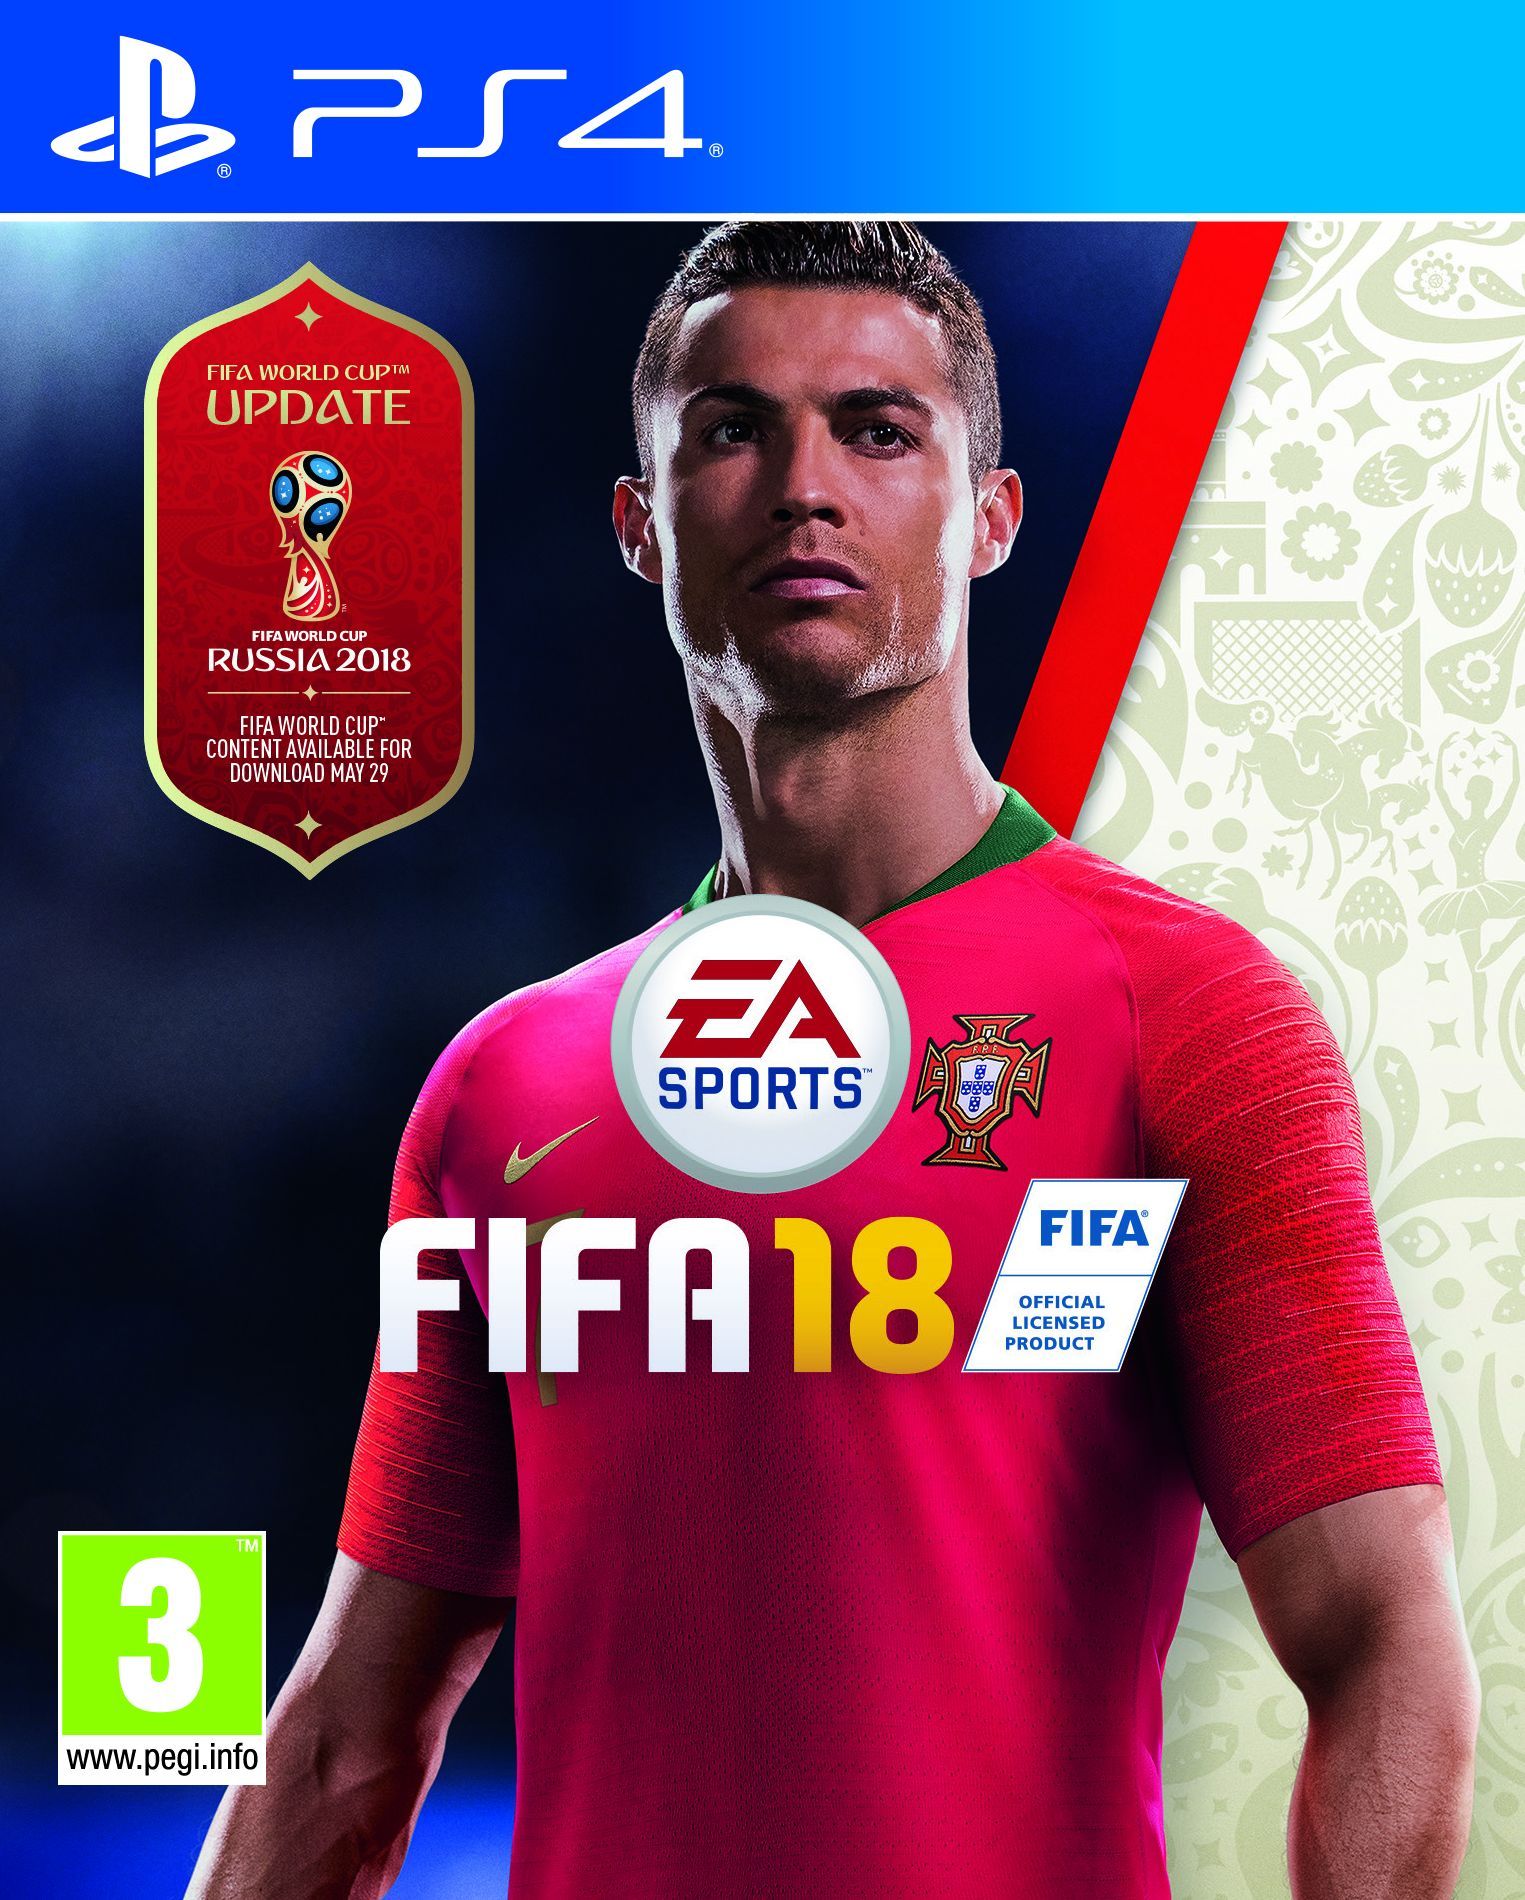 FIFA 18 се радва на сериозна популярност покрай световното